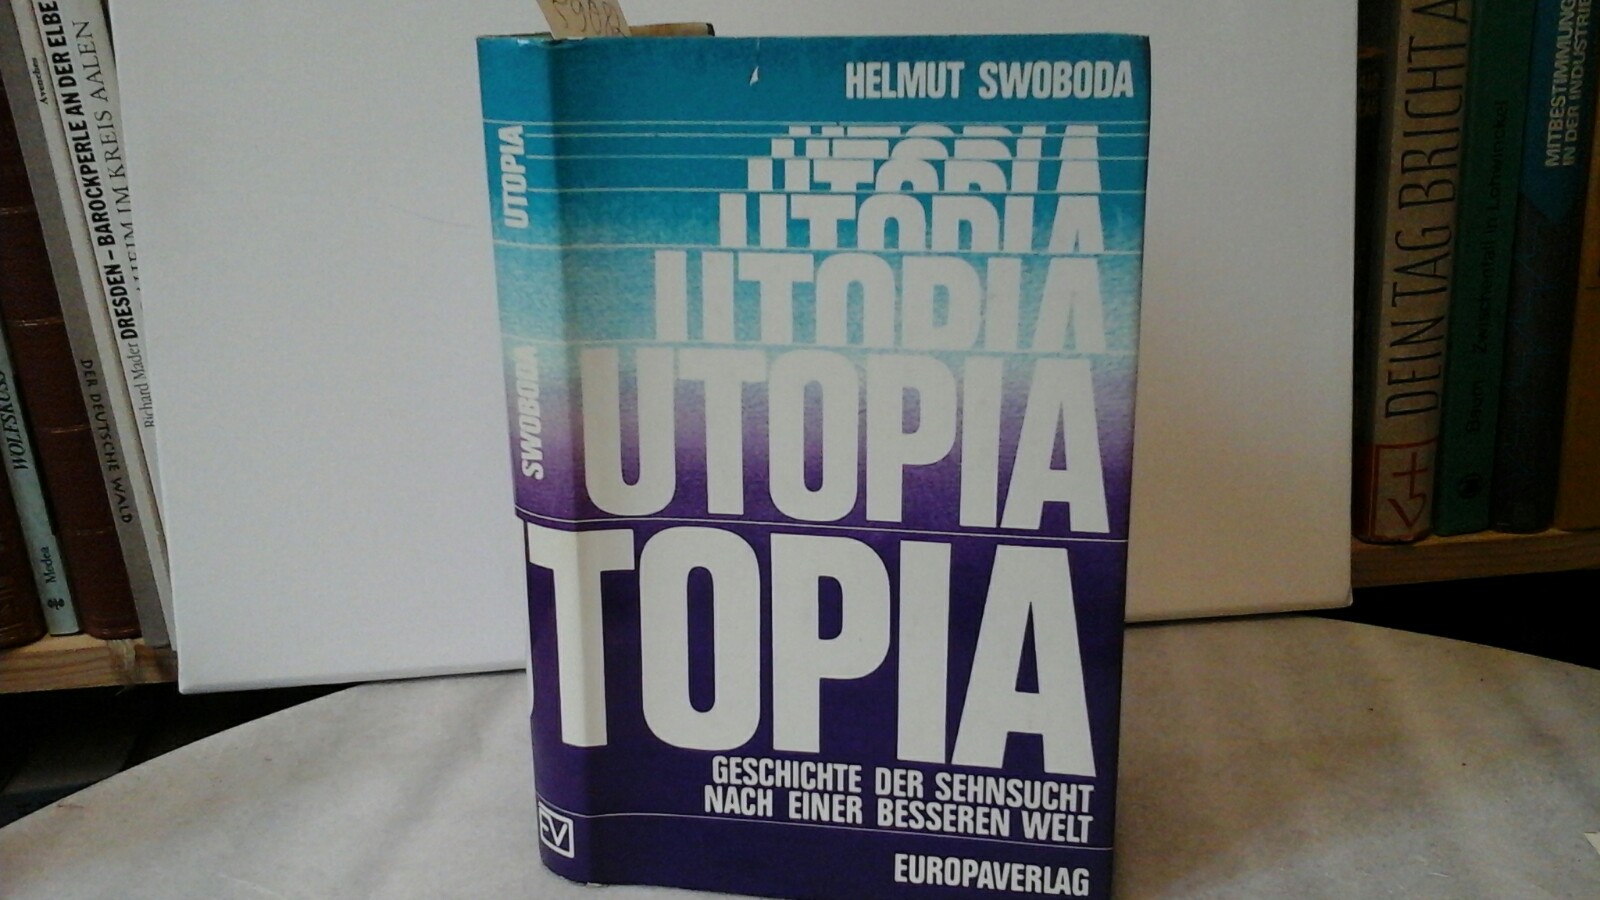 3203504243 - SWOBODA, HELMUT: Utopia. Geschichte der Sehnsucht nach einer besseren Welt. Erste /1./ Ausgabe.